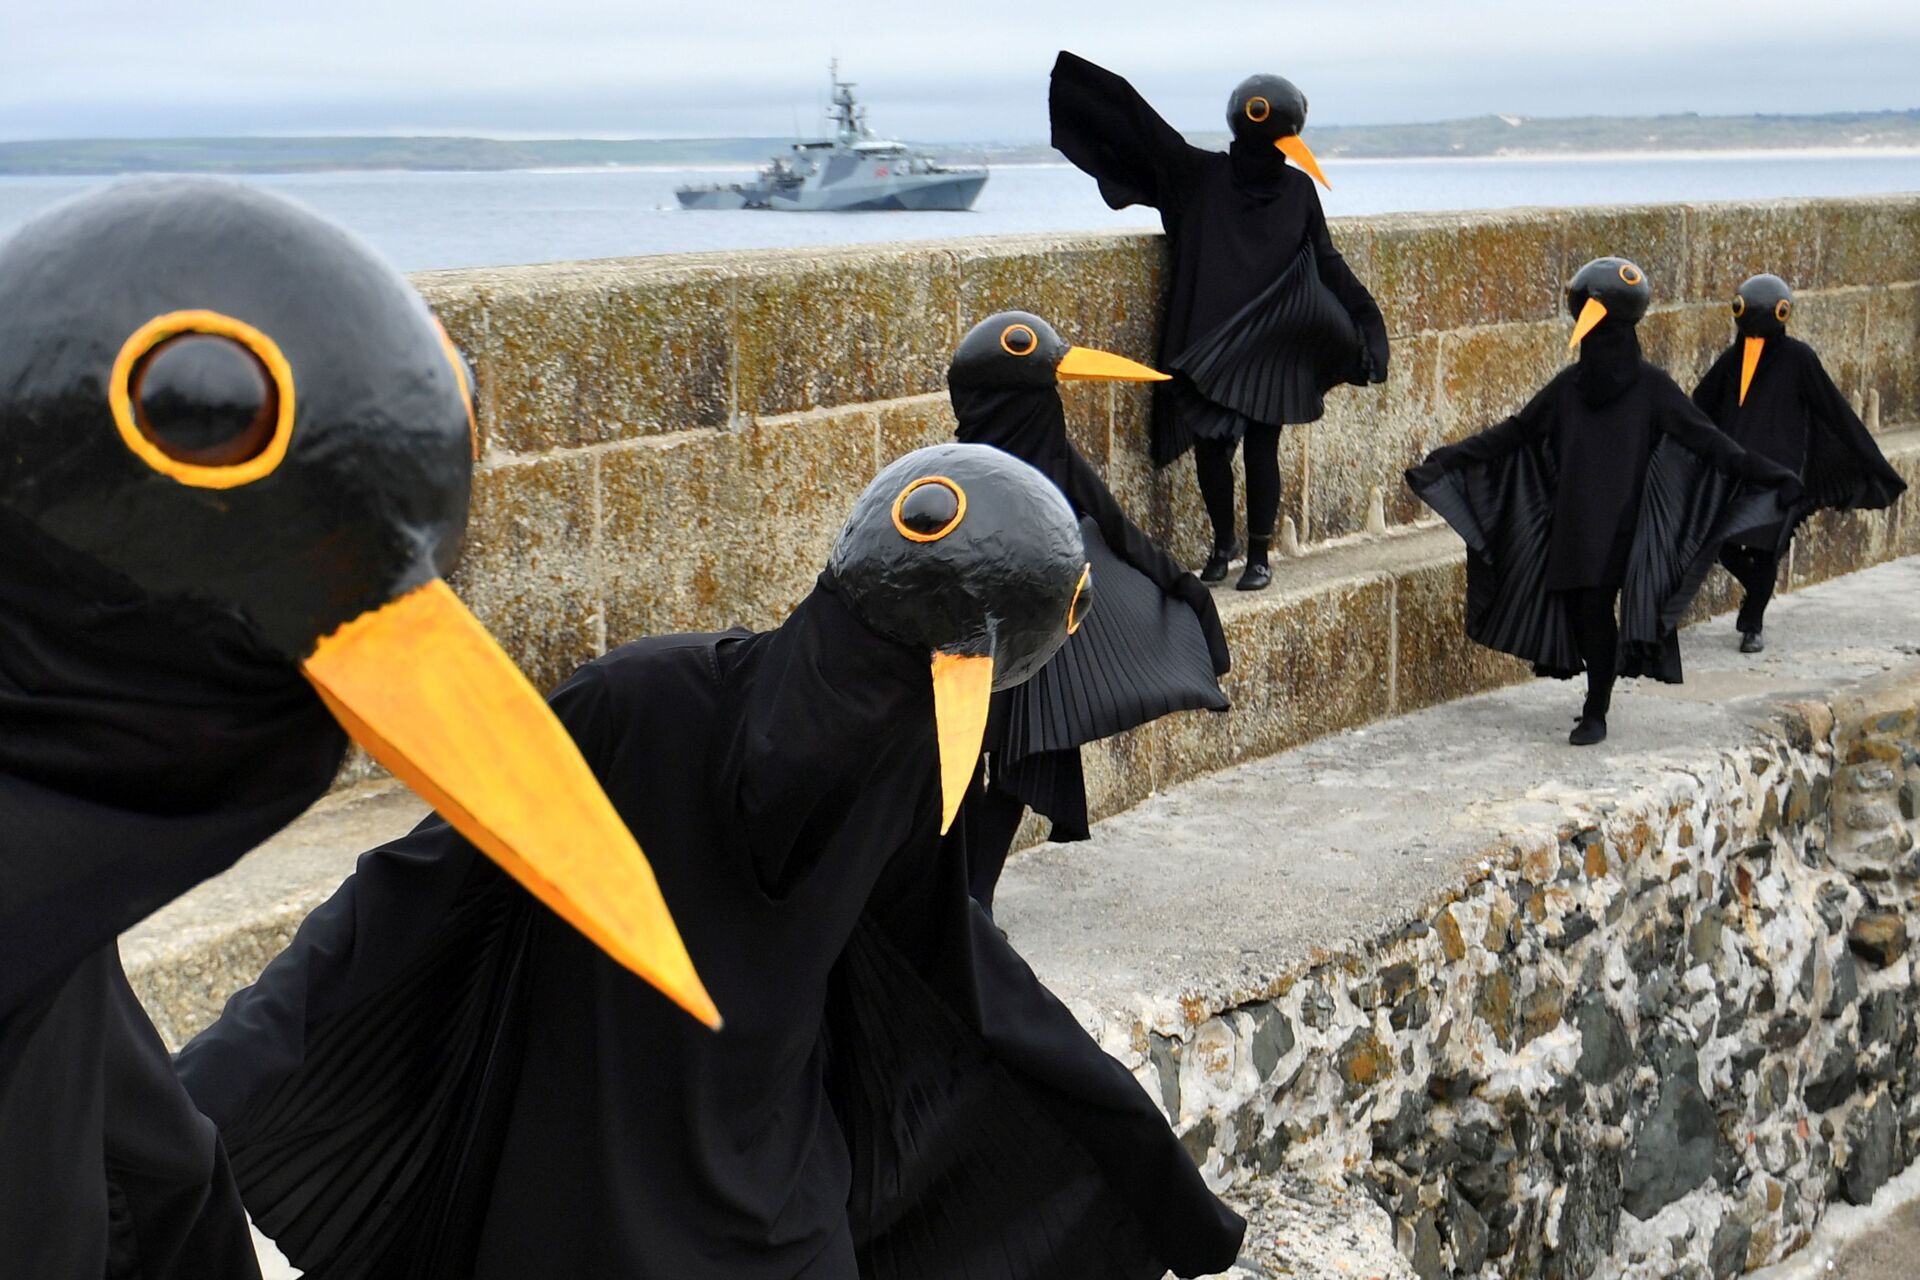 Kargo kostümü giyen bir grup, zirvenin gerçekleştirildiği esnada Cornwall sahilinde toplanarak G7 ülkelerini protesto etti. - Sputnik Türkiye, 1920, 10.08.2021